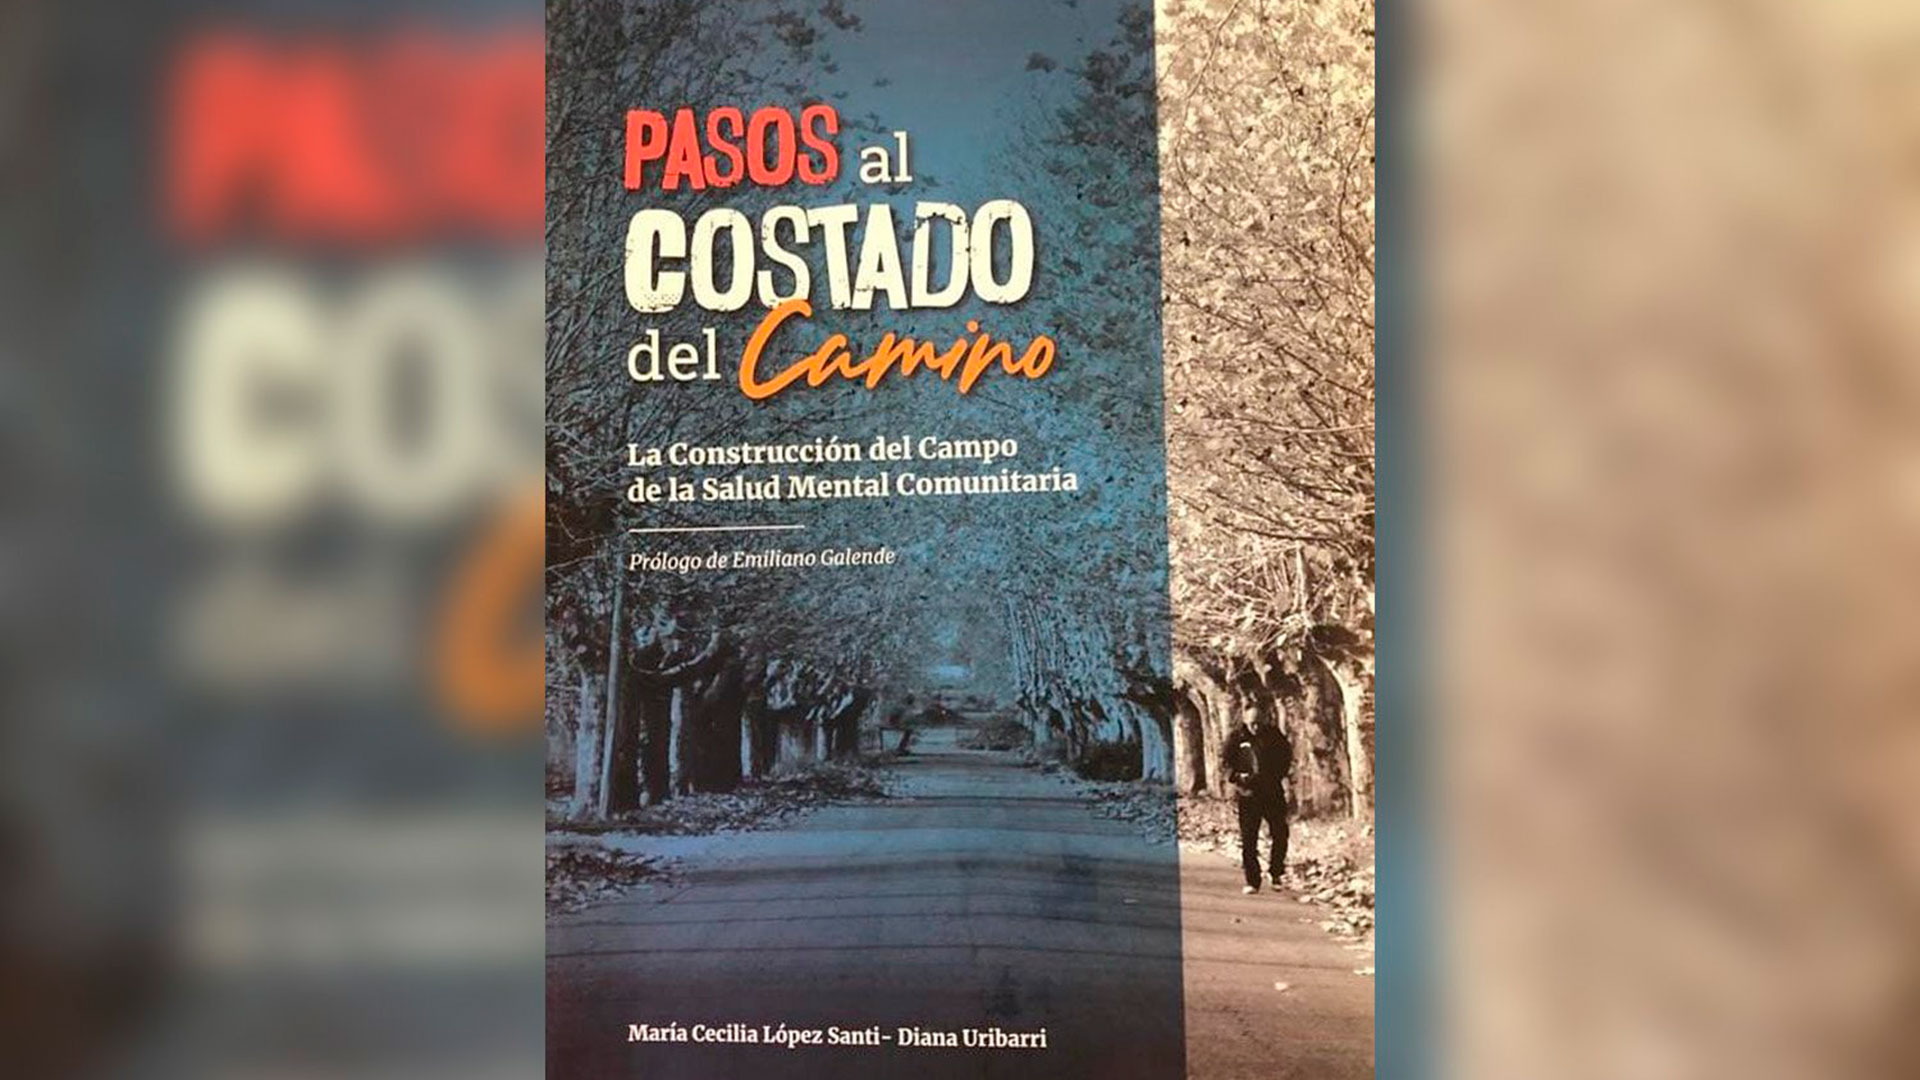 Portada de “Pasos al Costado del Camino: la construcción del campo de la Salud Mental Comunitaria", escrito por María Cecilia López Santi y Diana Uribarri.